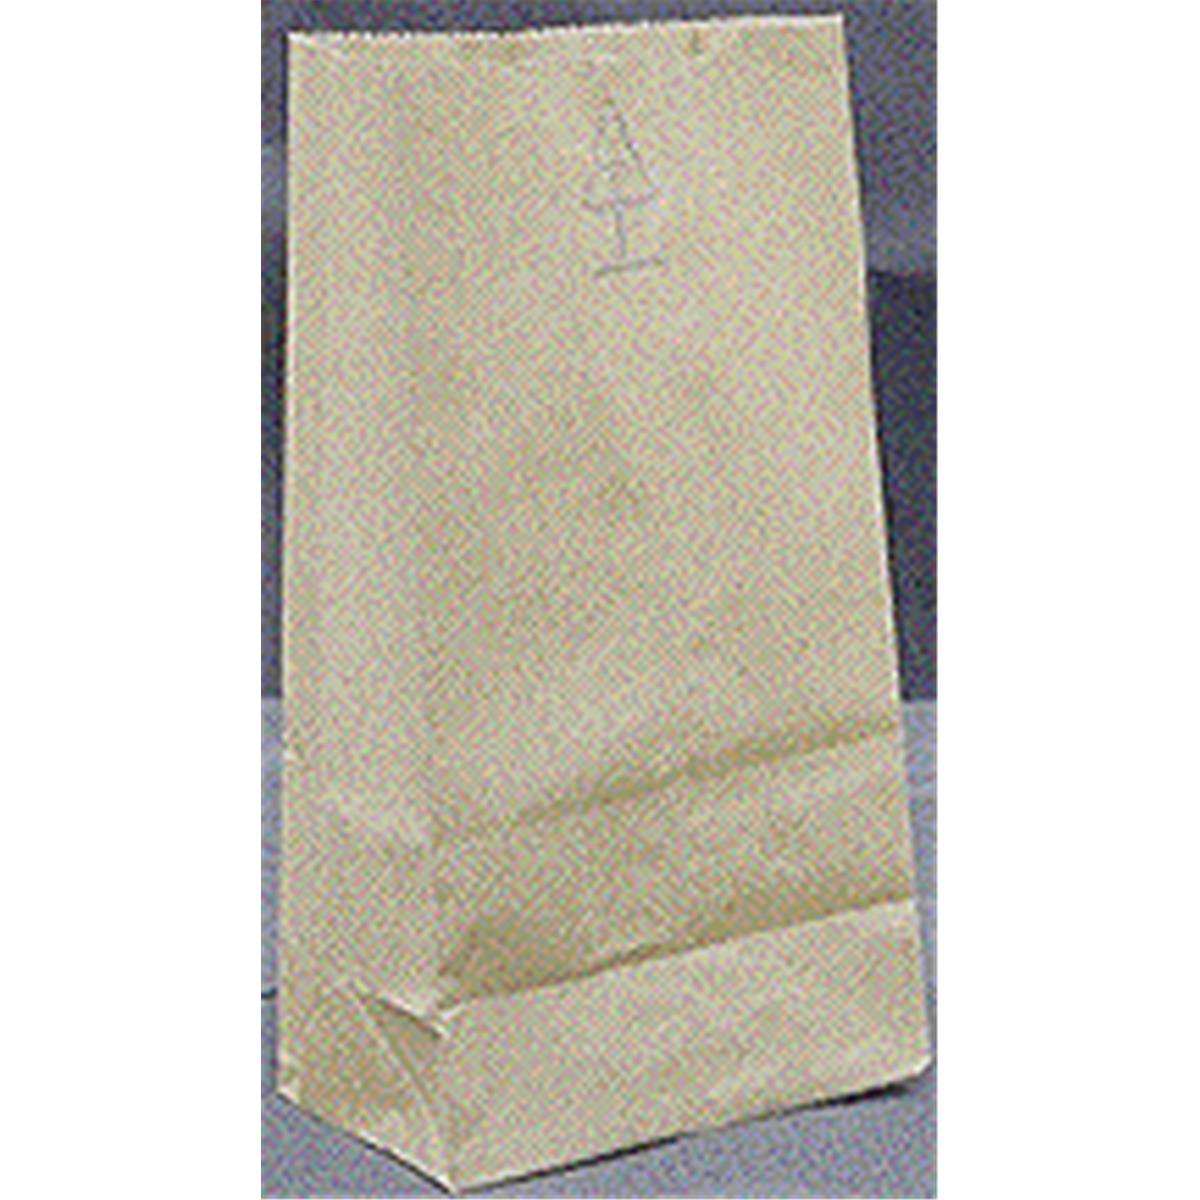 18403 3 Lbs Grocery Bags, Brown Kraft Paper - Pack Of 500